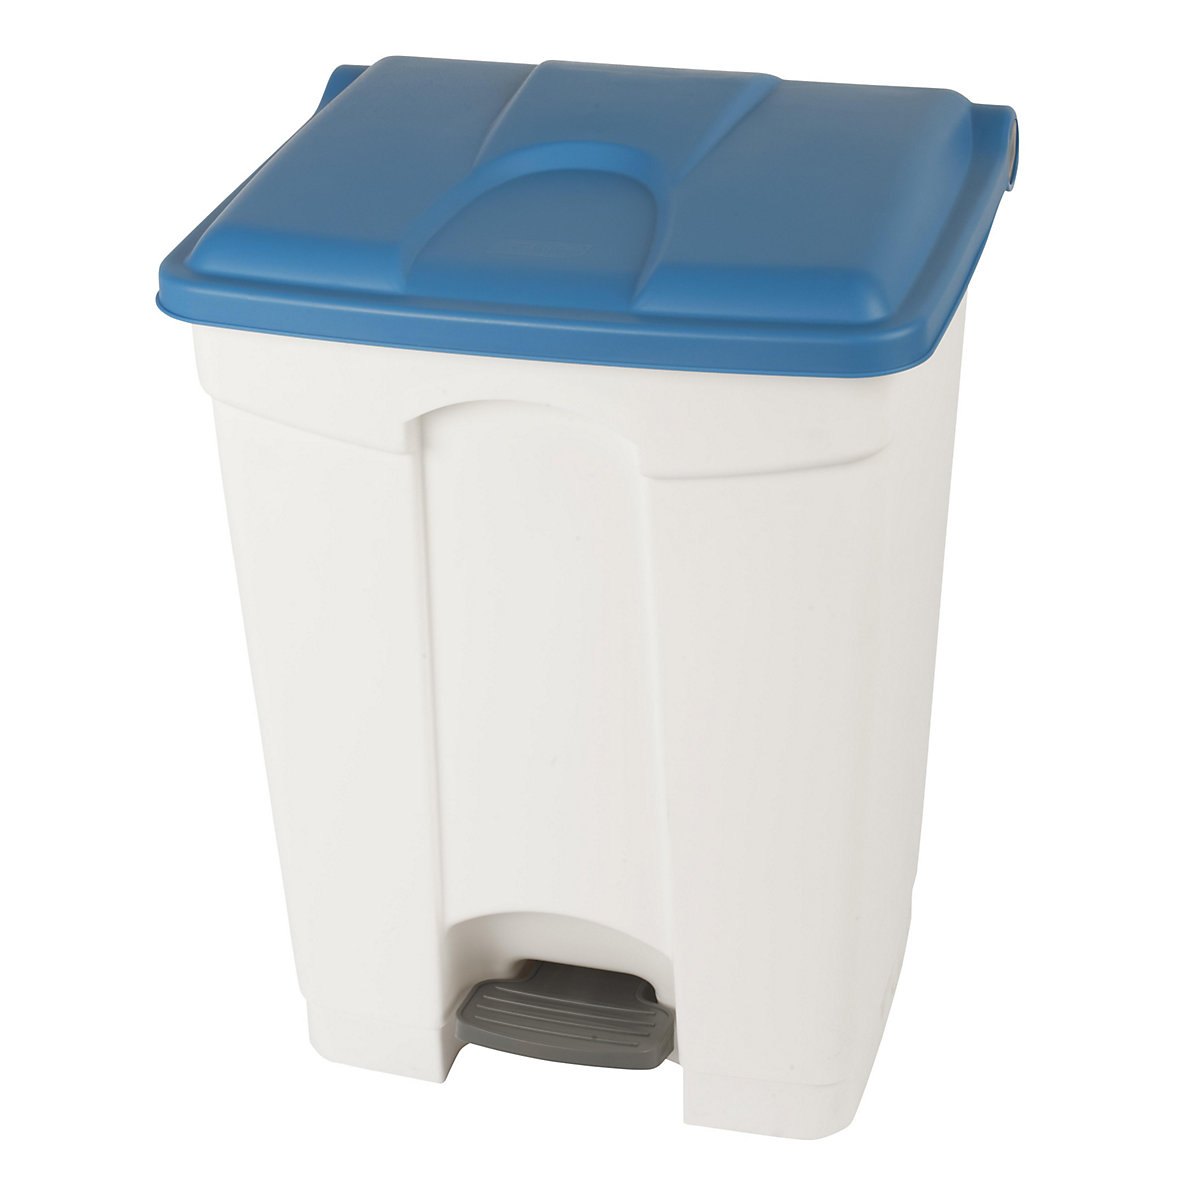 Nádoba na odpad s pedálem, objem 70 l, š x v x h 505 x 675 x 415 mm, bílá, modré víko-11